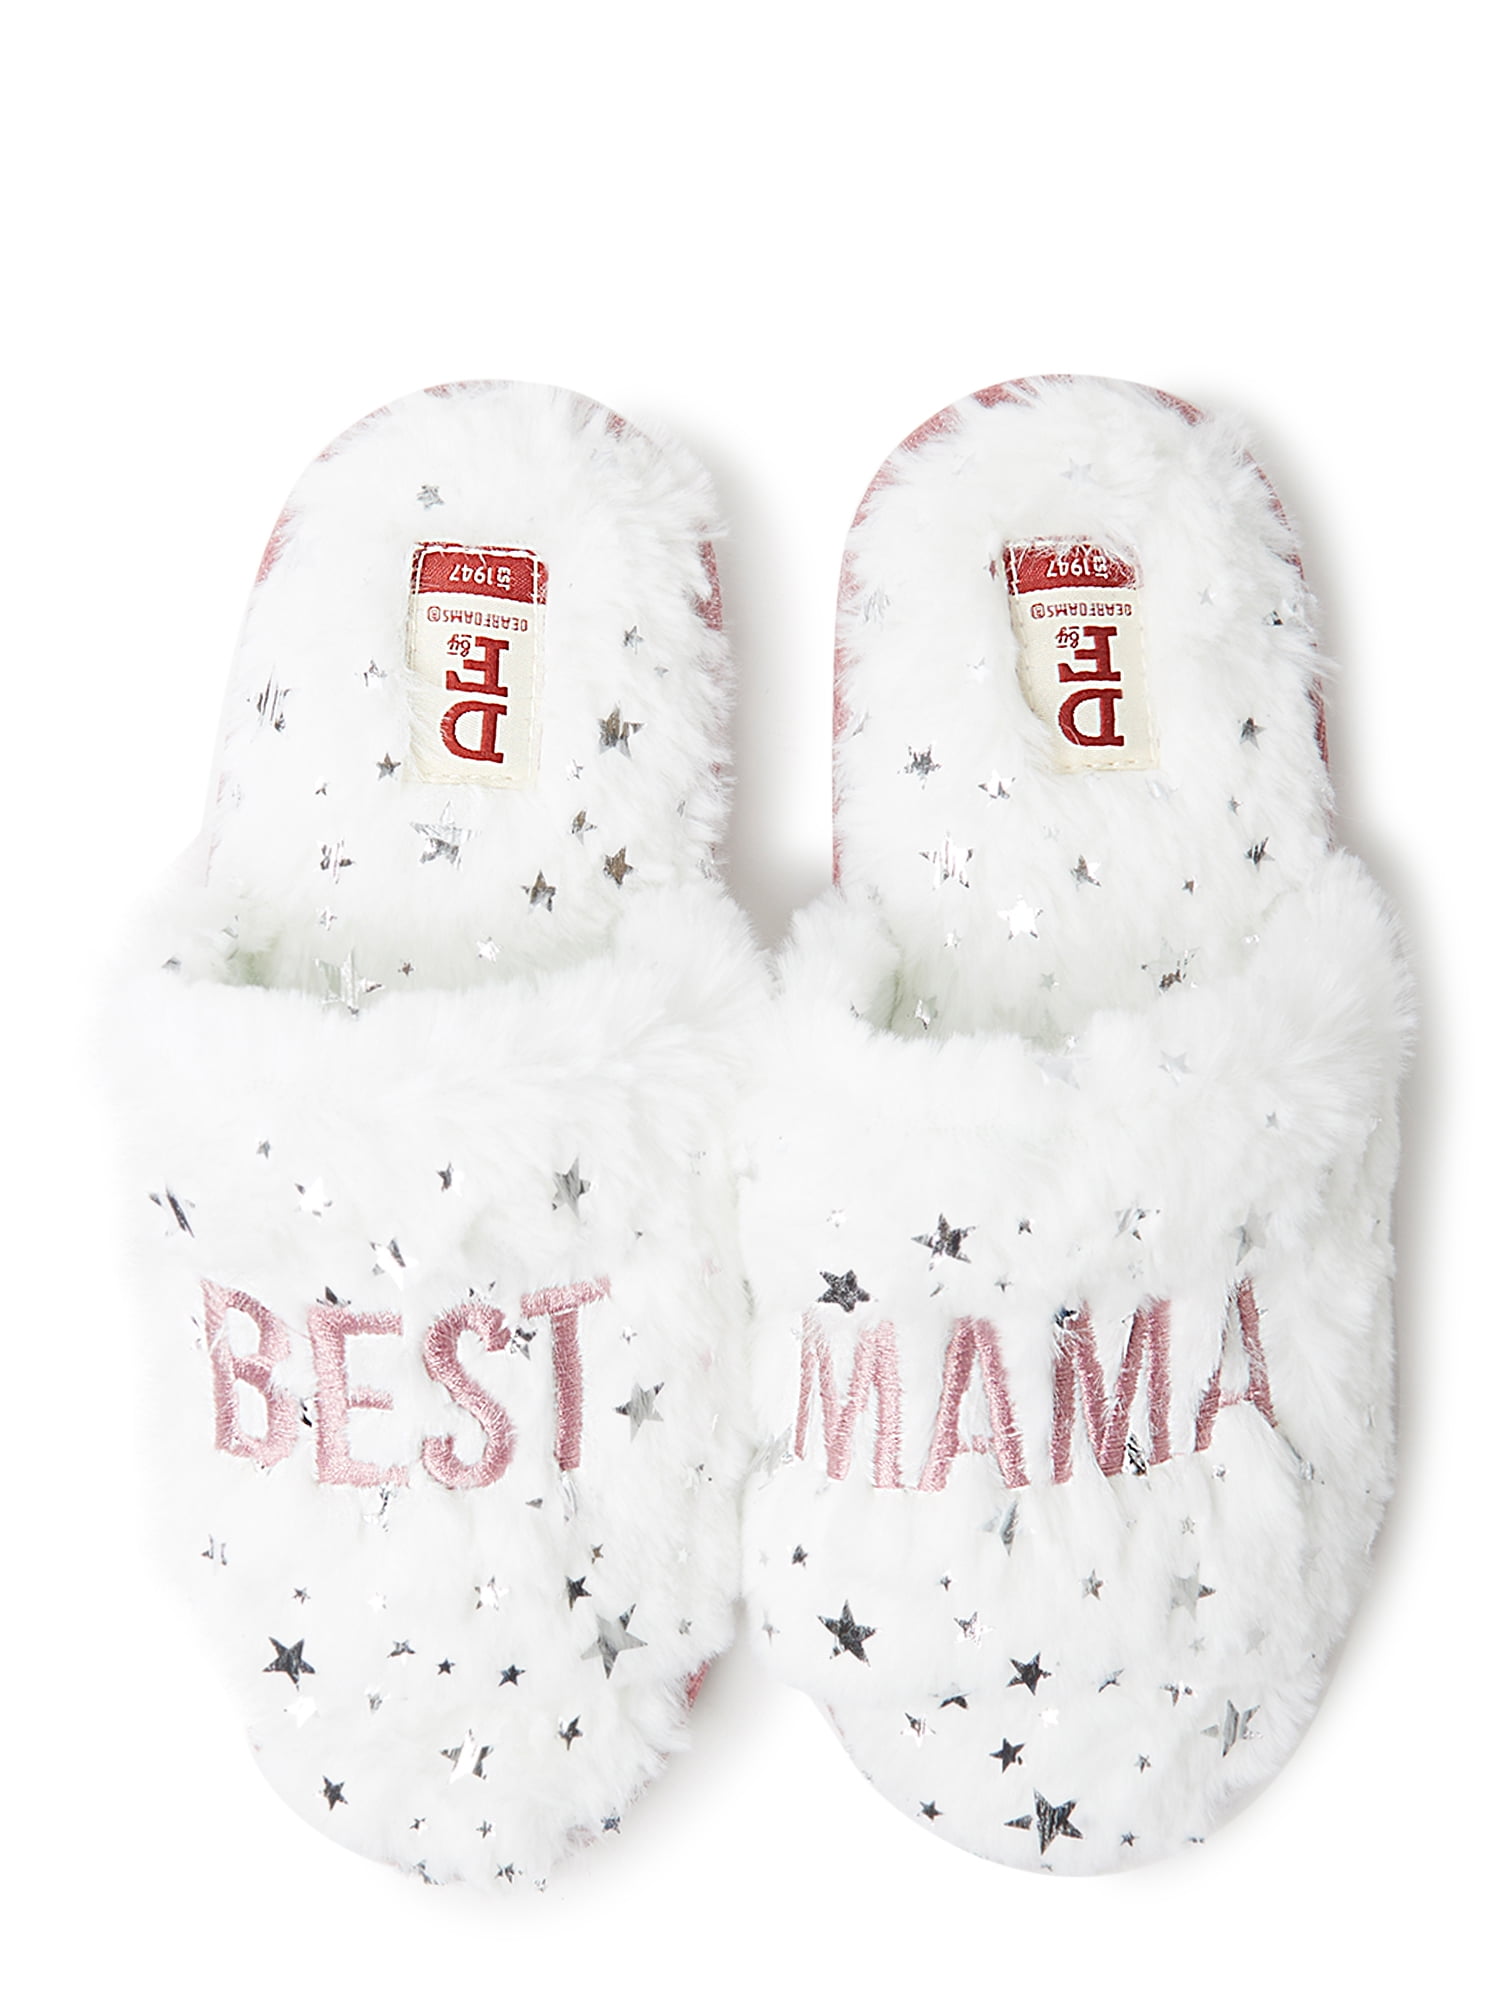 best dearfoam slippers